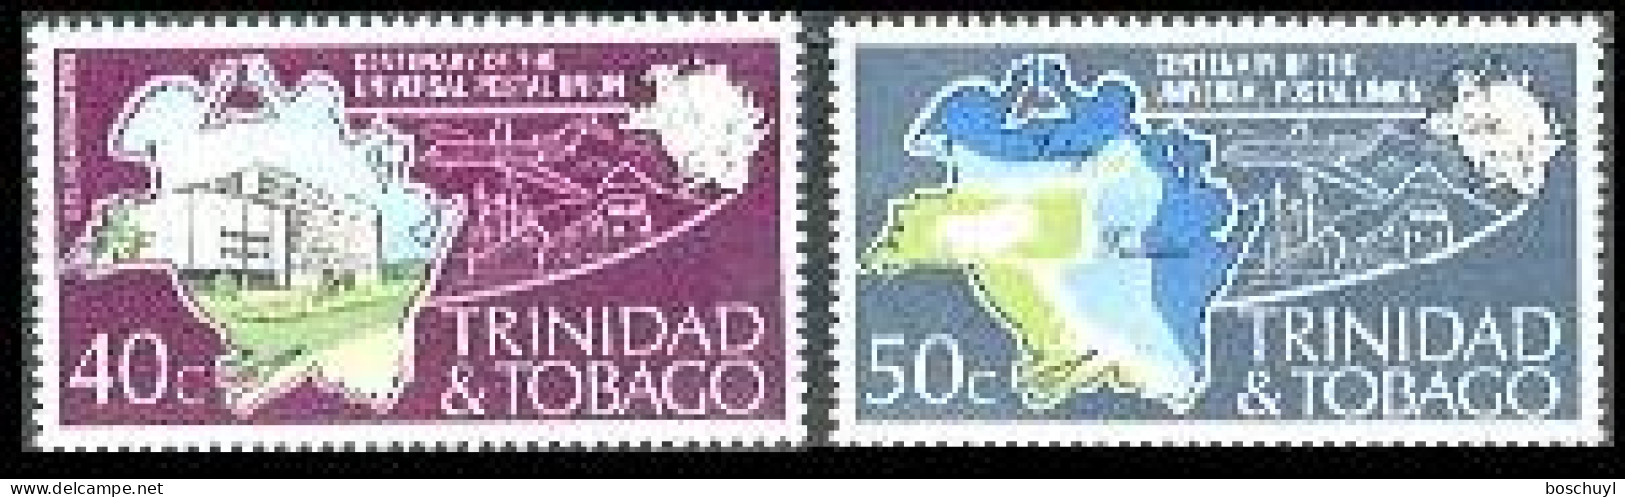 Trinidad And Tobago, 1974, UPU Centenary, Universal Postal Union, United Nations, MNH, Michel 328-329 - Trinidad Y Tobago (1962-...)